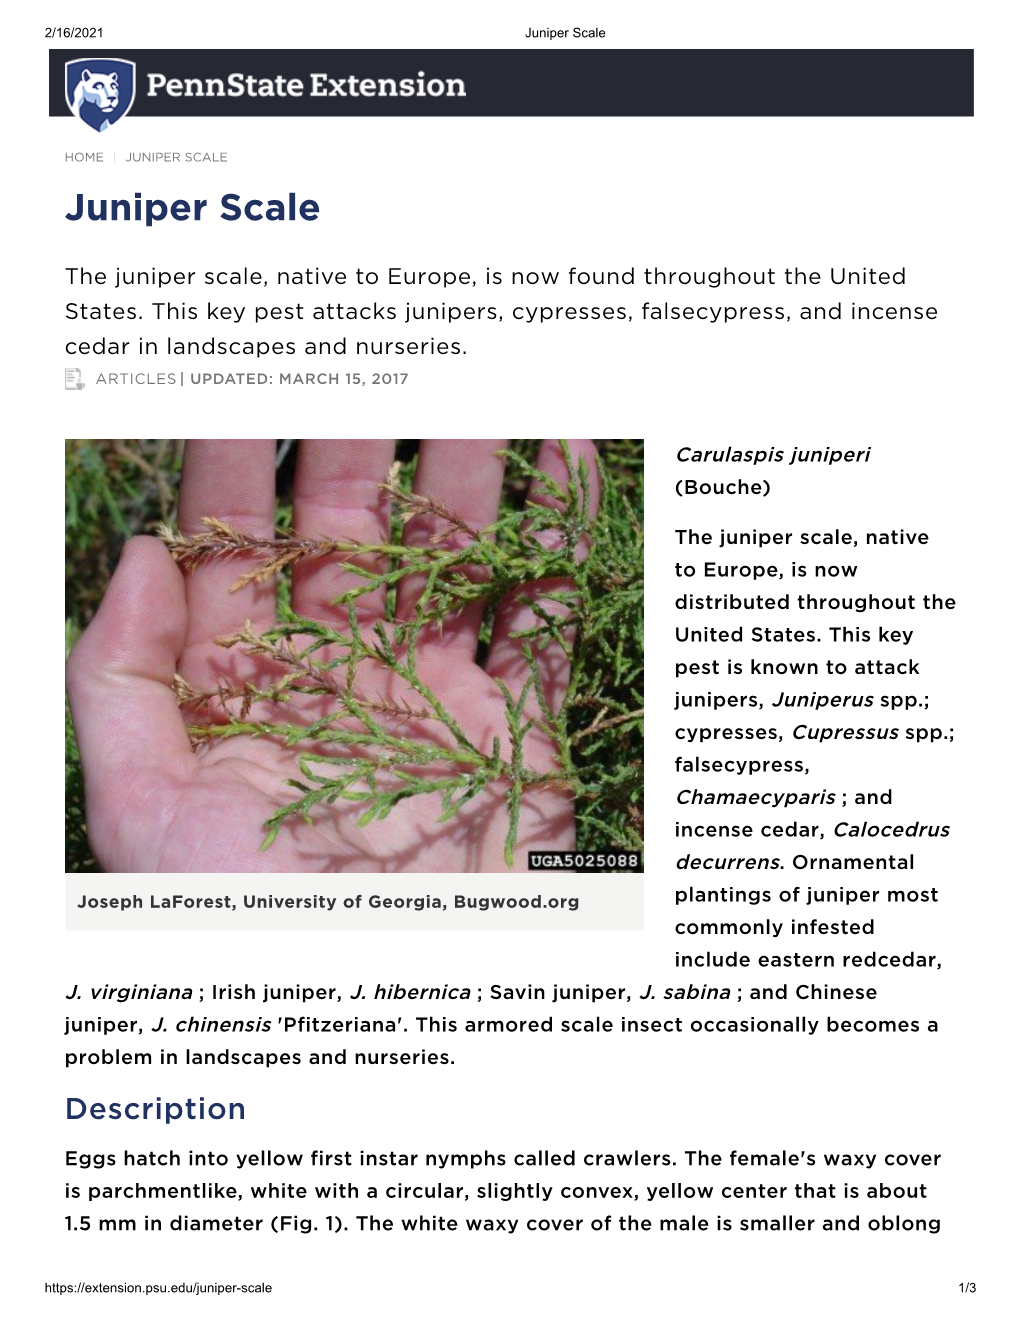 Juniper Scale